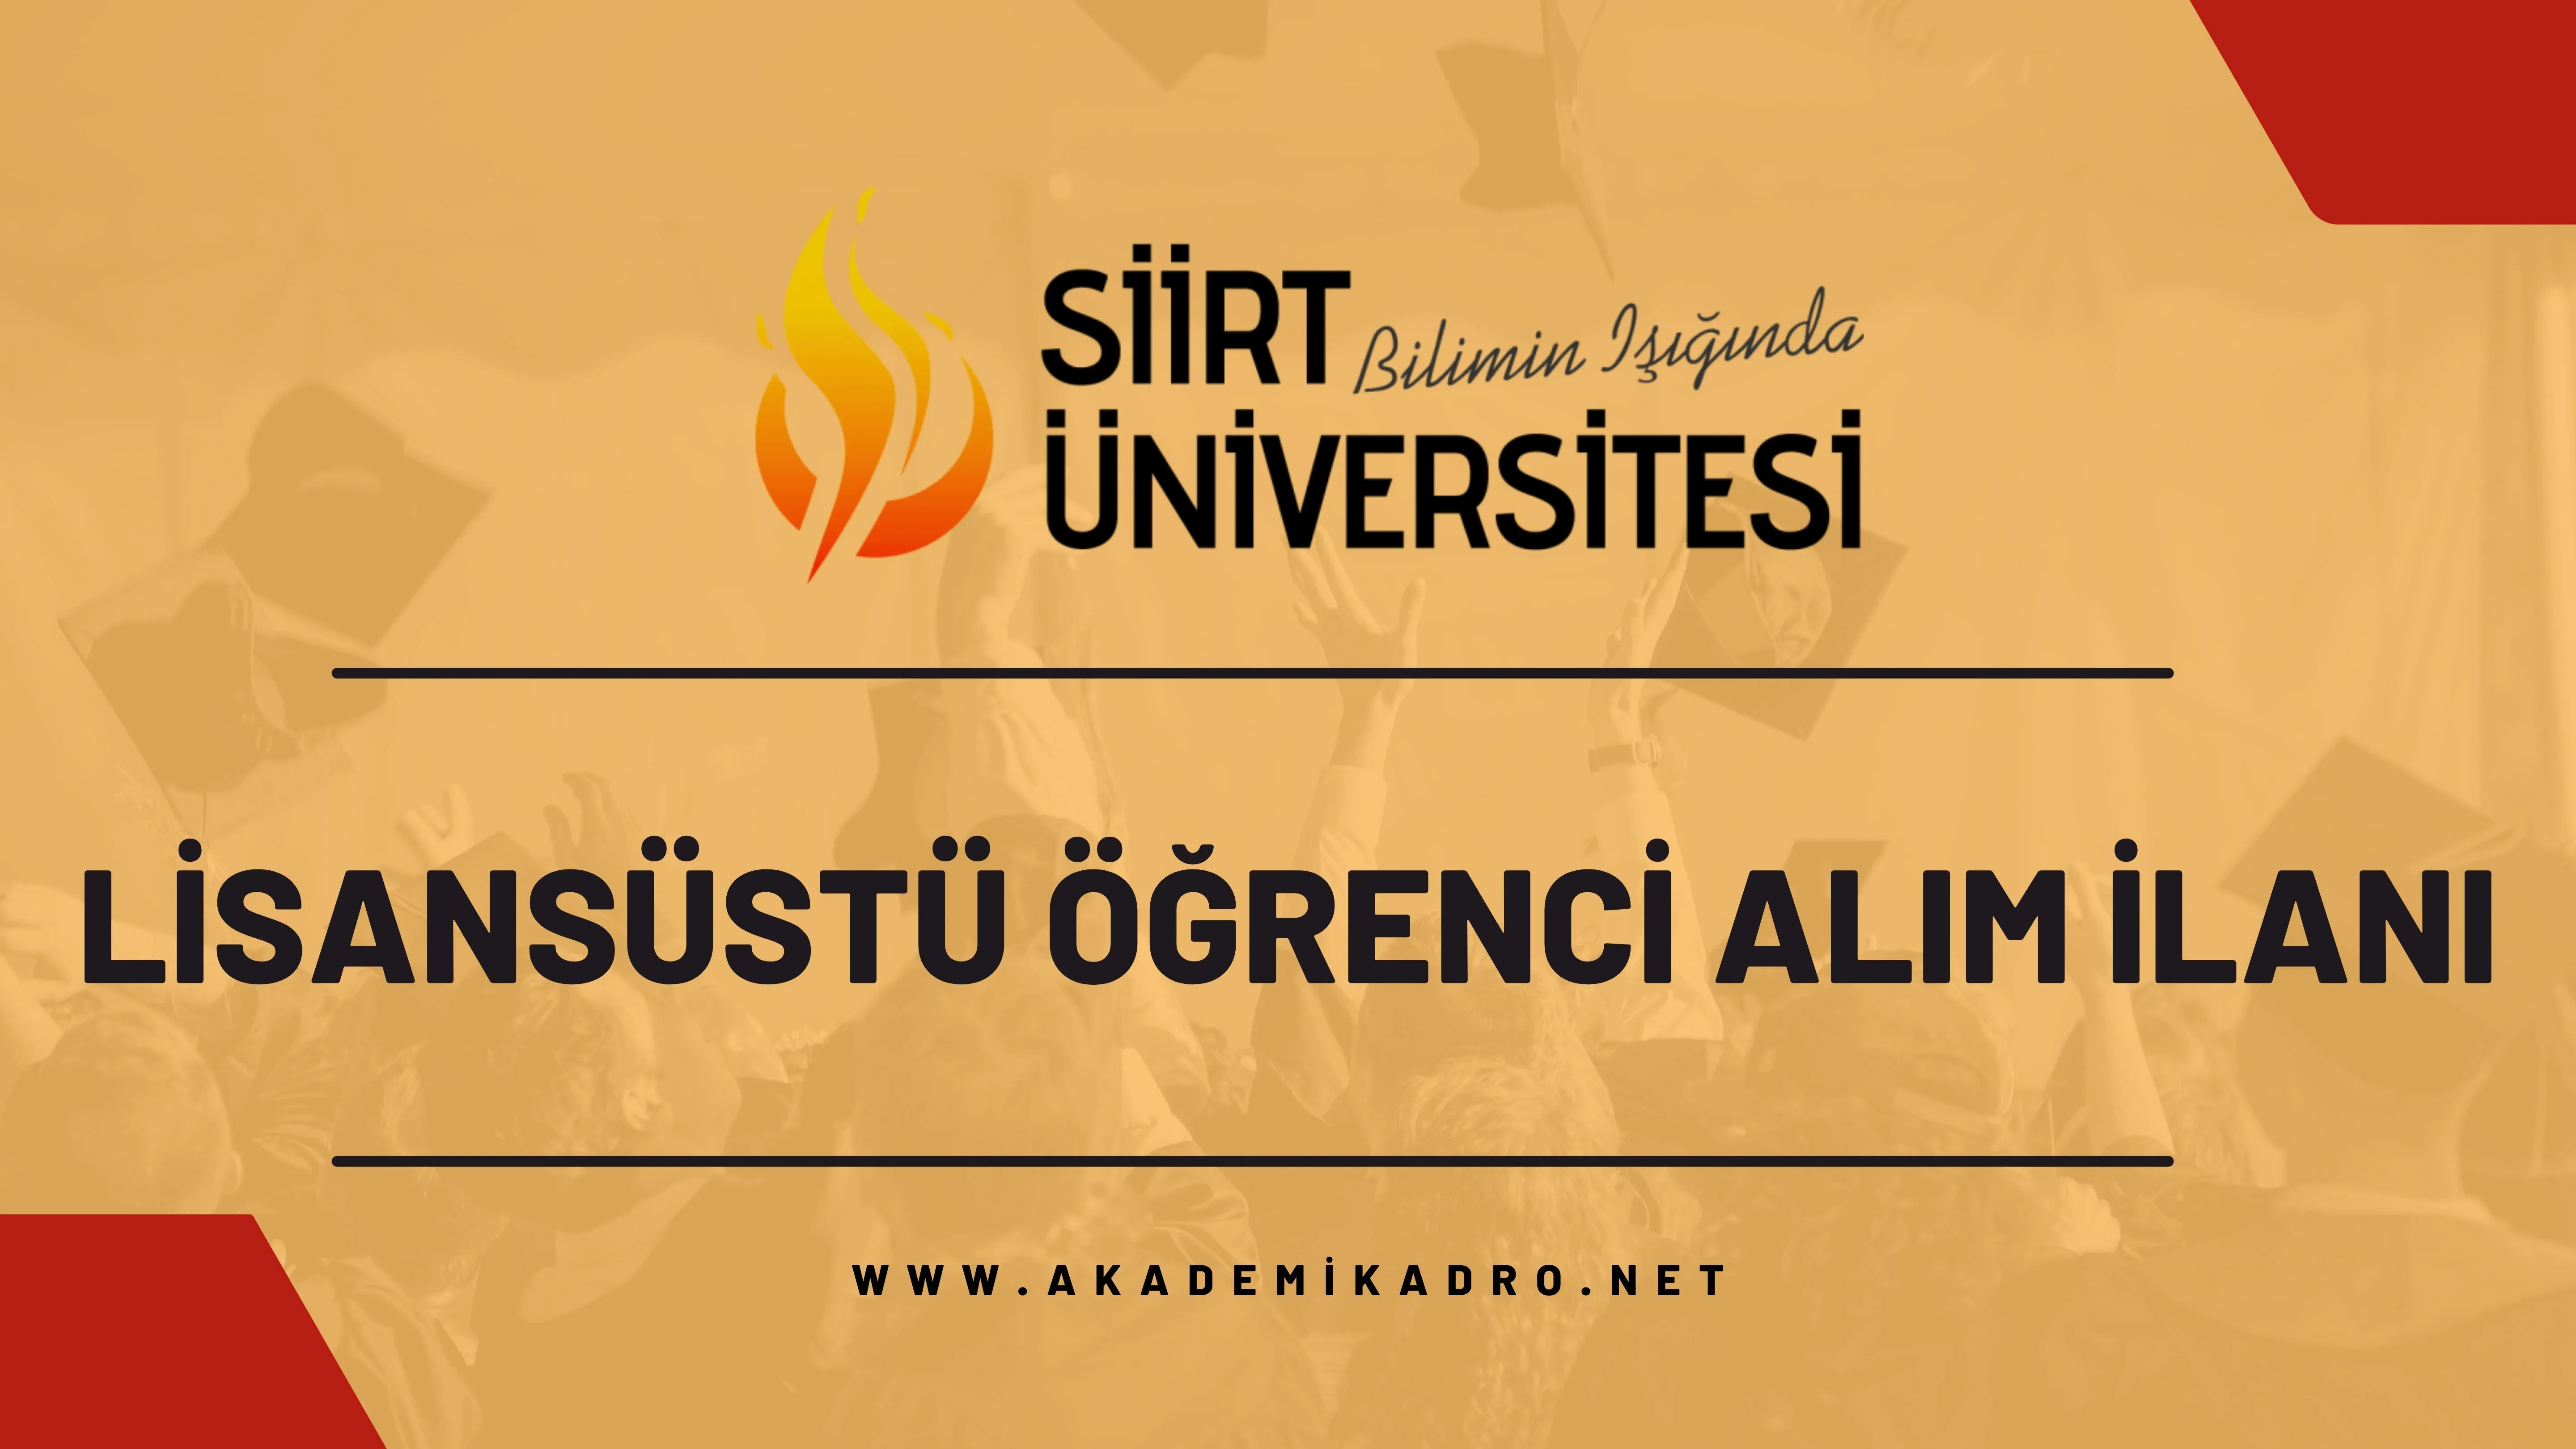 Siirt Üniversitesi 2023-2024 bahar döneminde lisansüstü programlara öğrenci alacaktır.